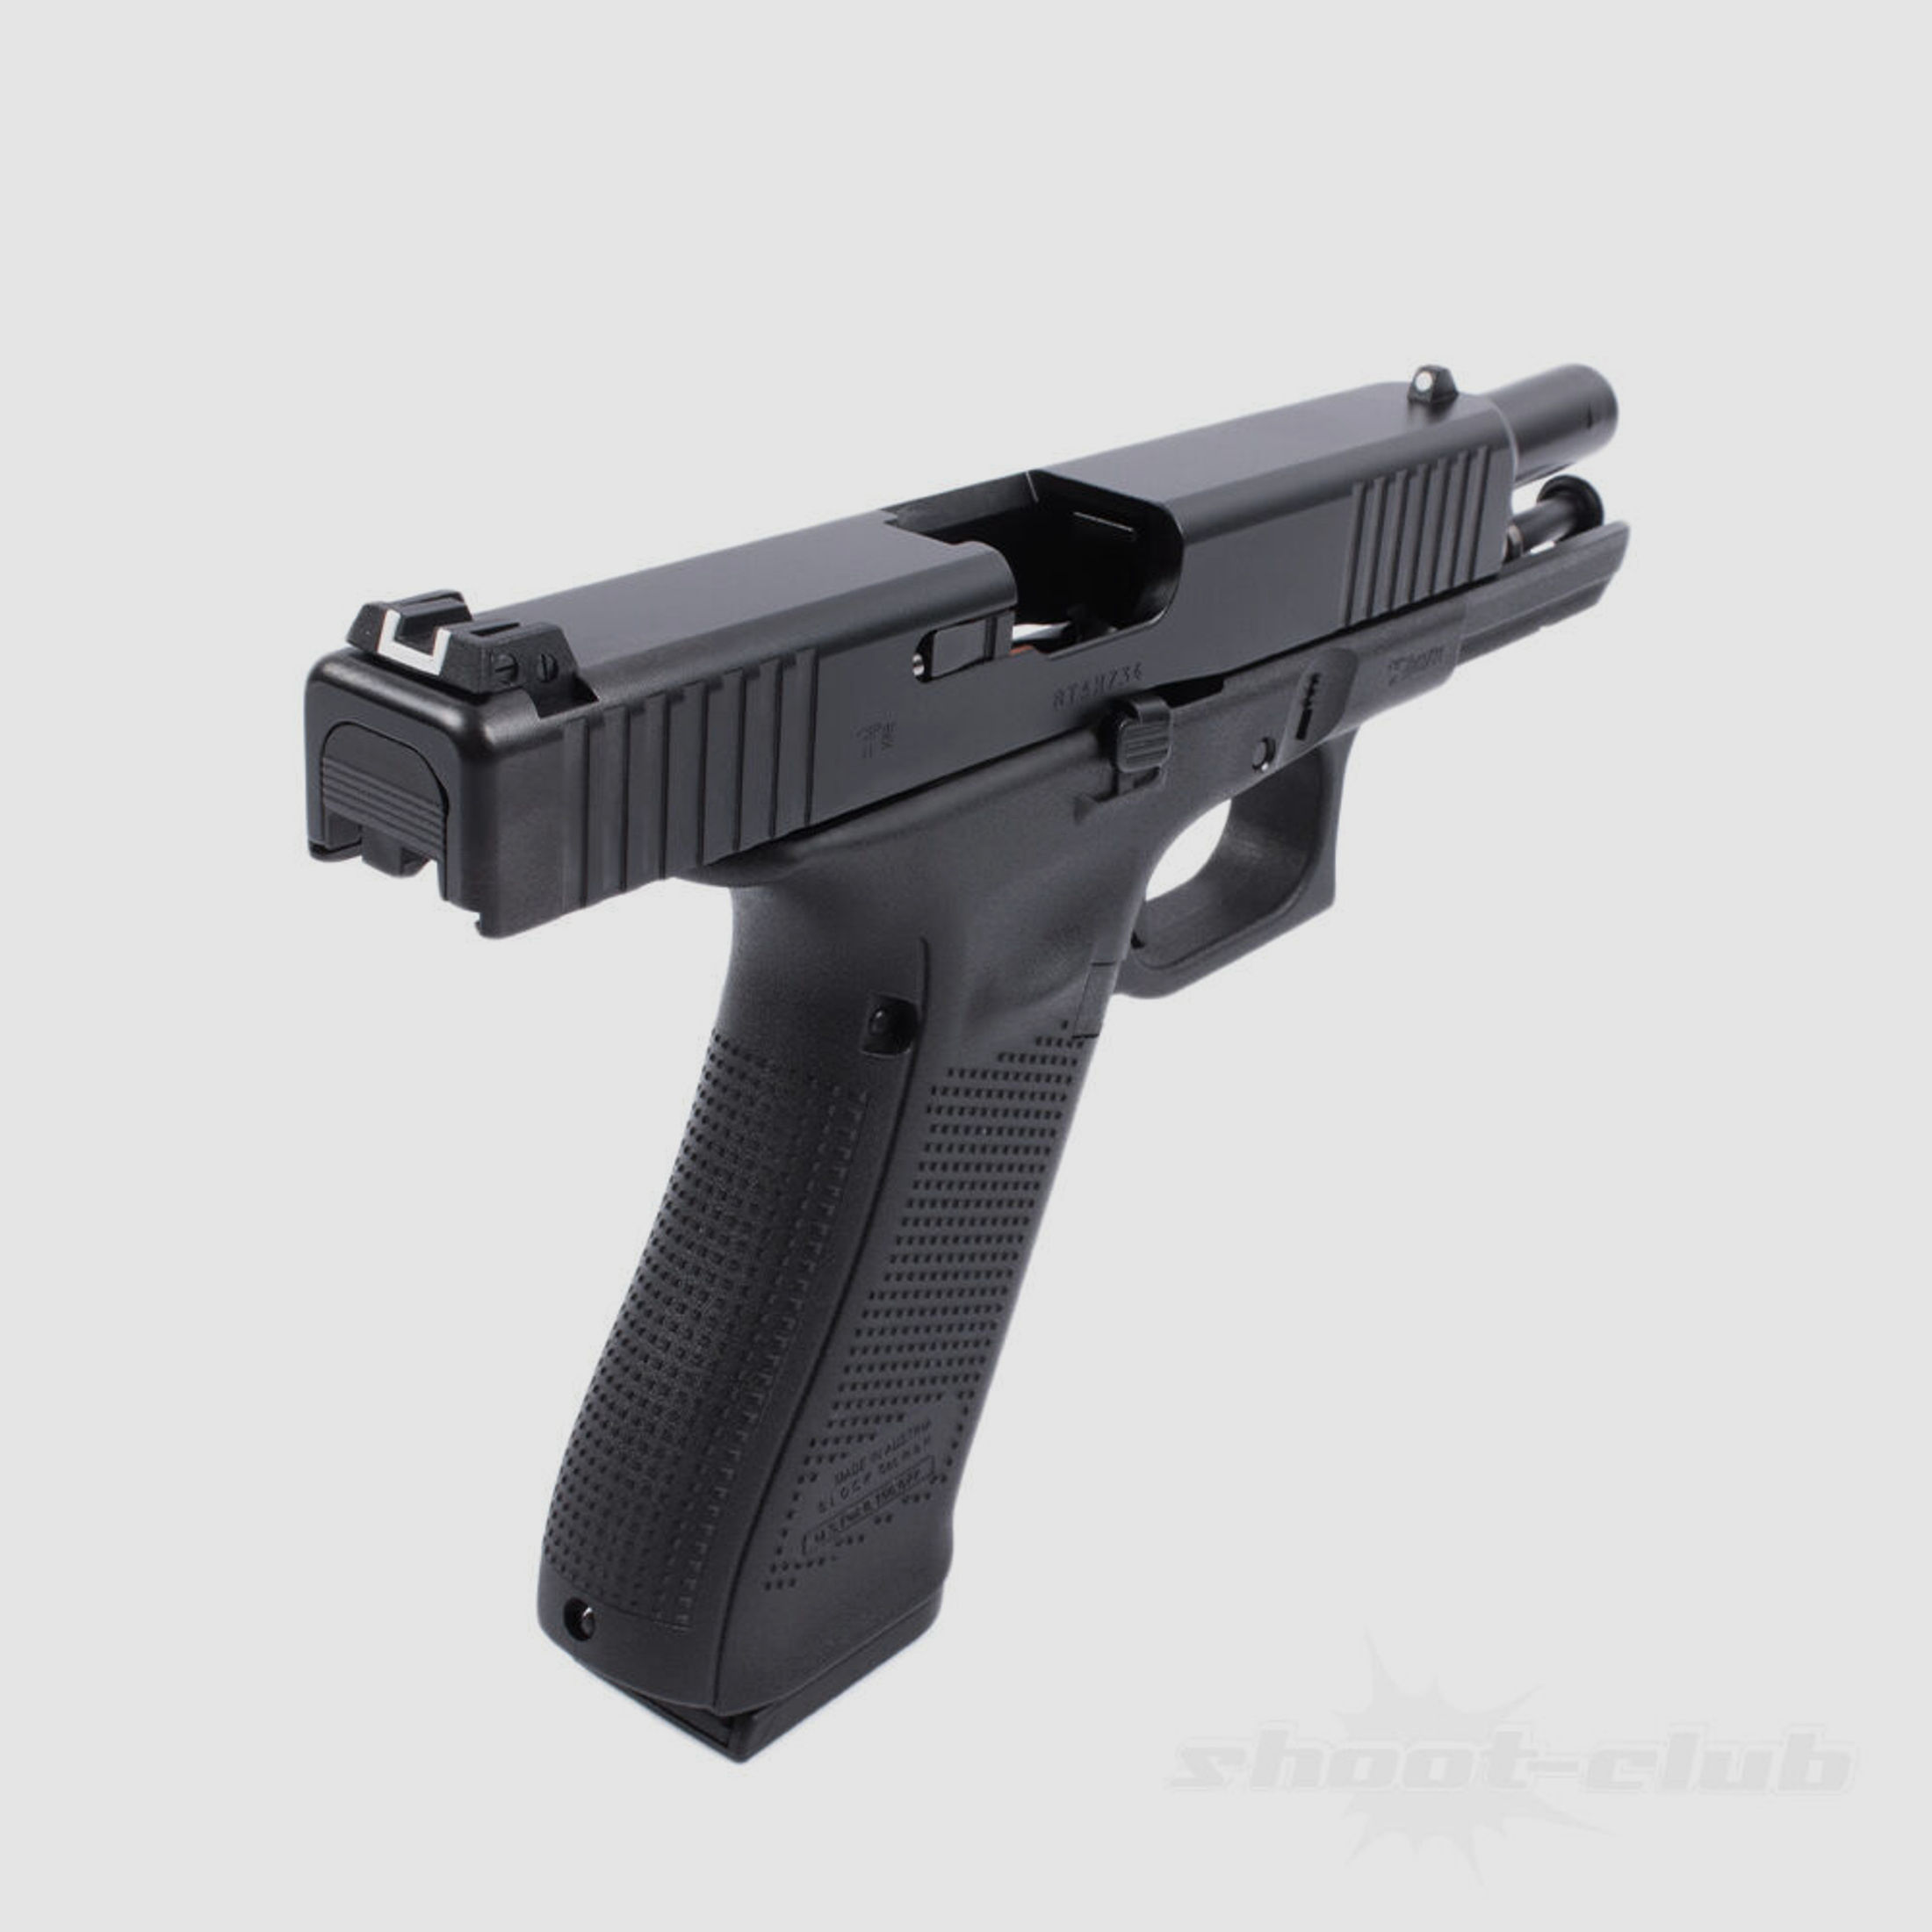 Glock17 Gen5 Pistole Kaliber 9mm Luger - Schwarz